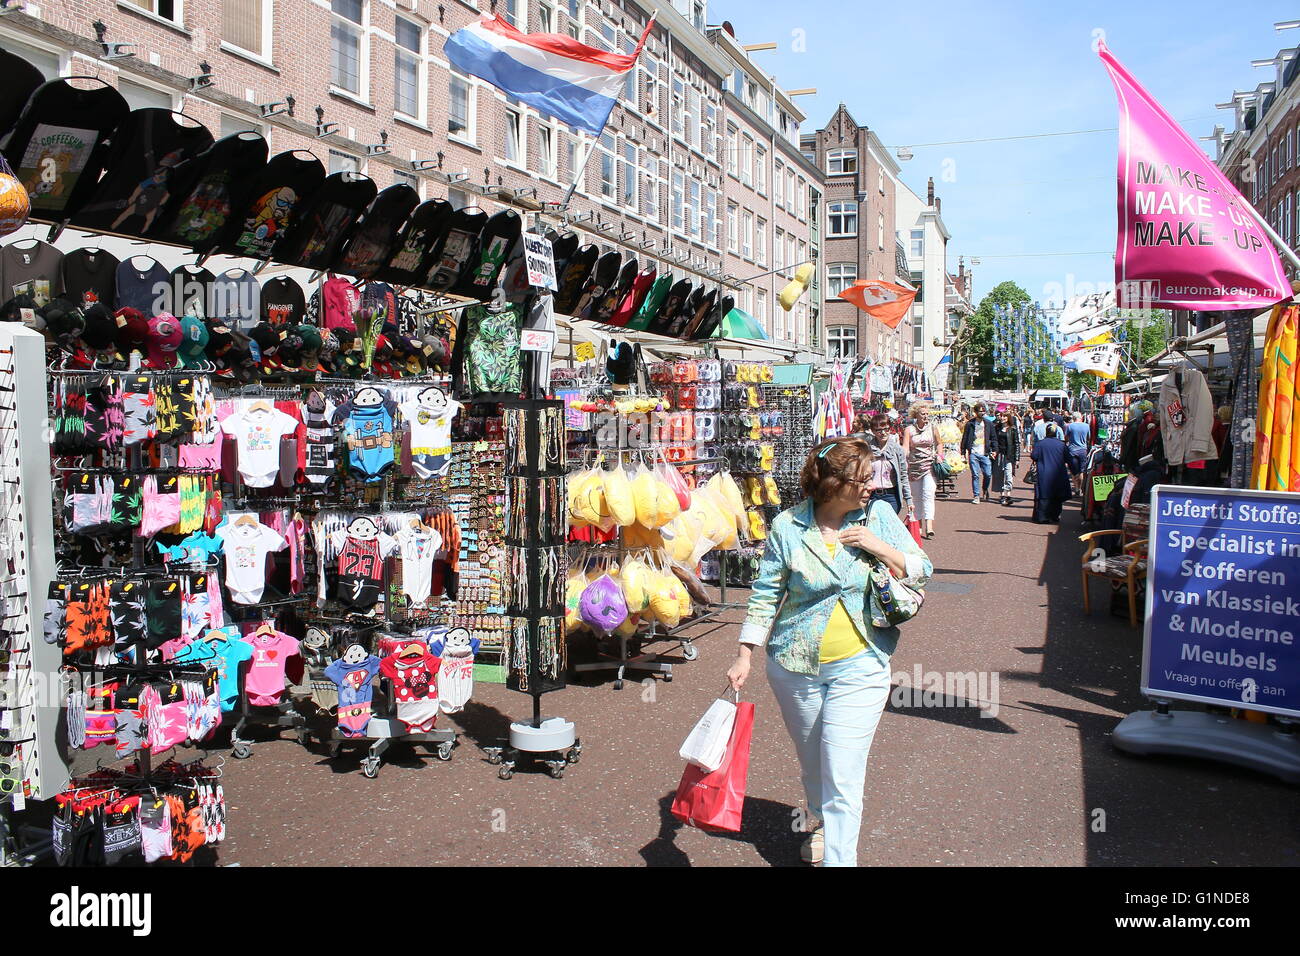 Les vendeurs de rue et les gens occupés shopping au marché Albert Cuyp, quartier De Pijp, Oud Zuid, Amsterdam, Pays-Bas Banque D'Images